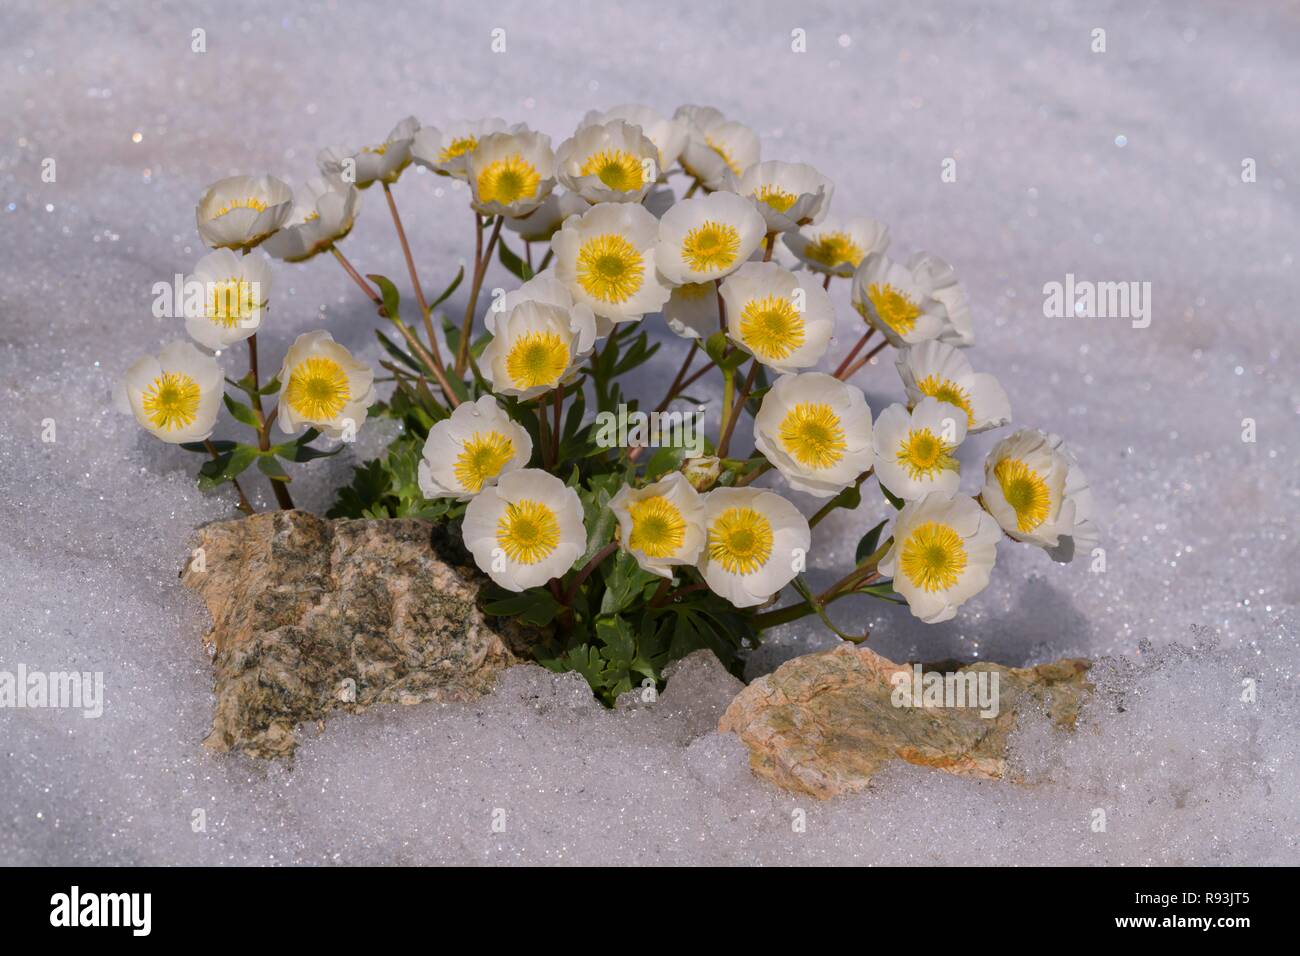 El glaciar Crowfoot (Ranunculus glacialis), florece en la nieve, Diavolezza, Alpes orientales, Engadin, Suiza Foto de stock